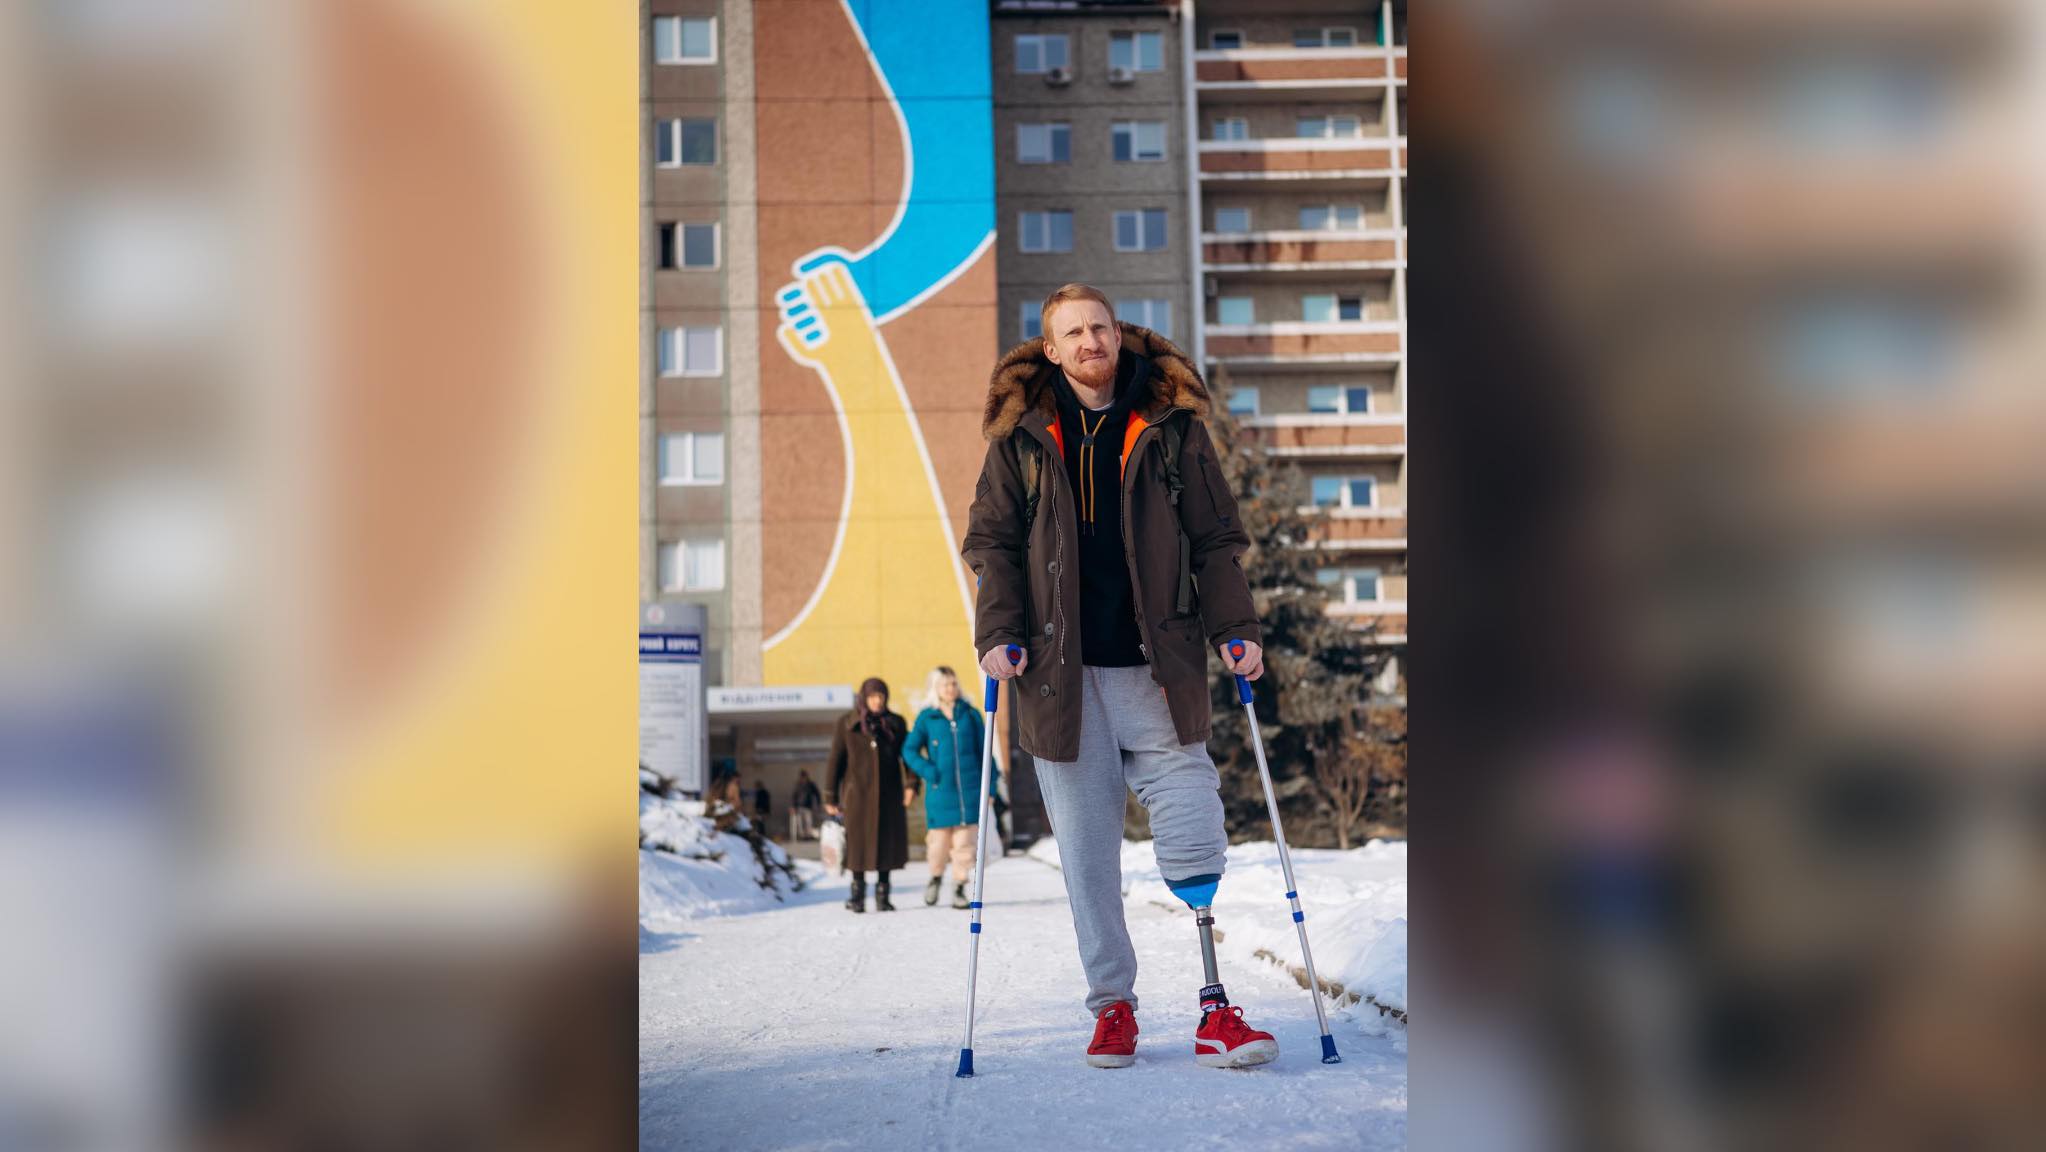 Права нога є — значить все нормально: історія бійця Василя Тежигора з Надвірної, який вижив після важких поранень (ФОТО)